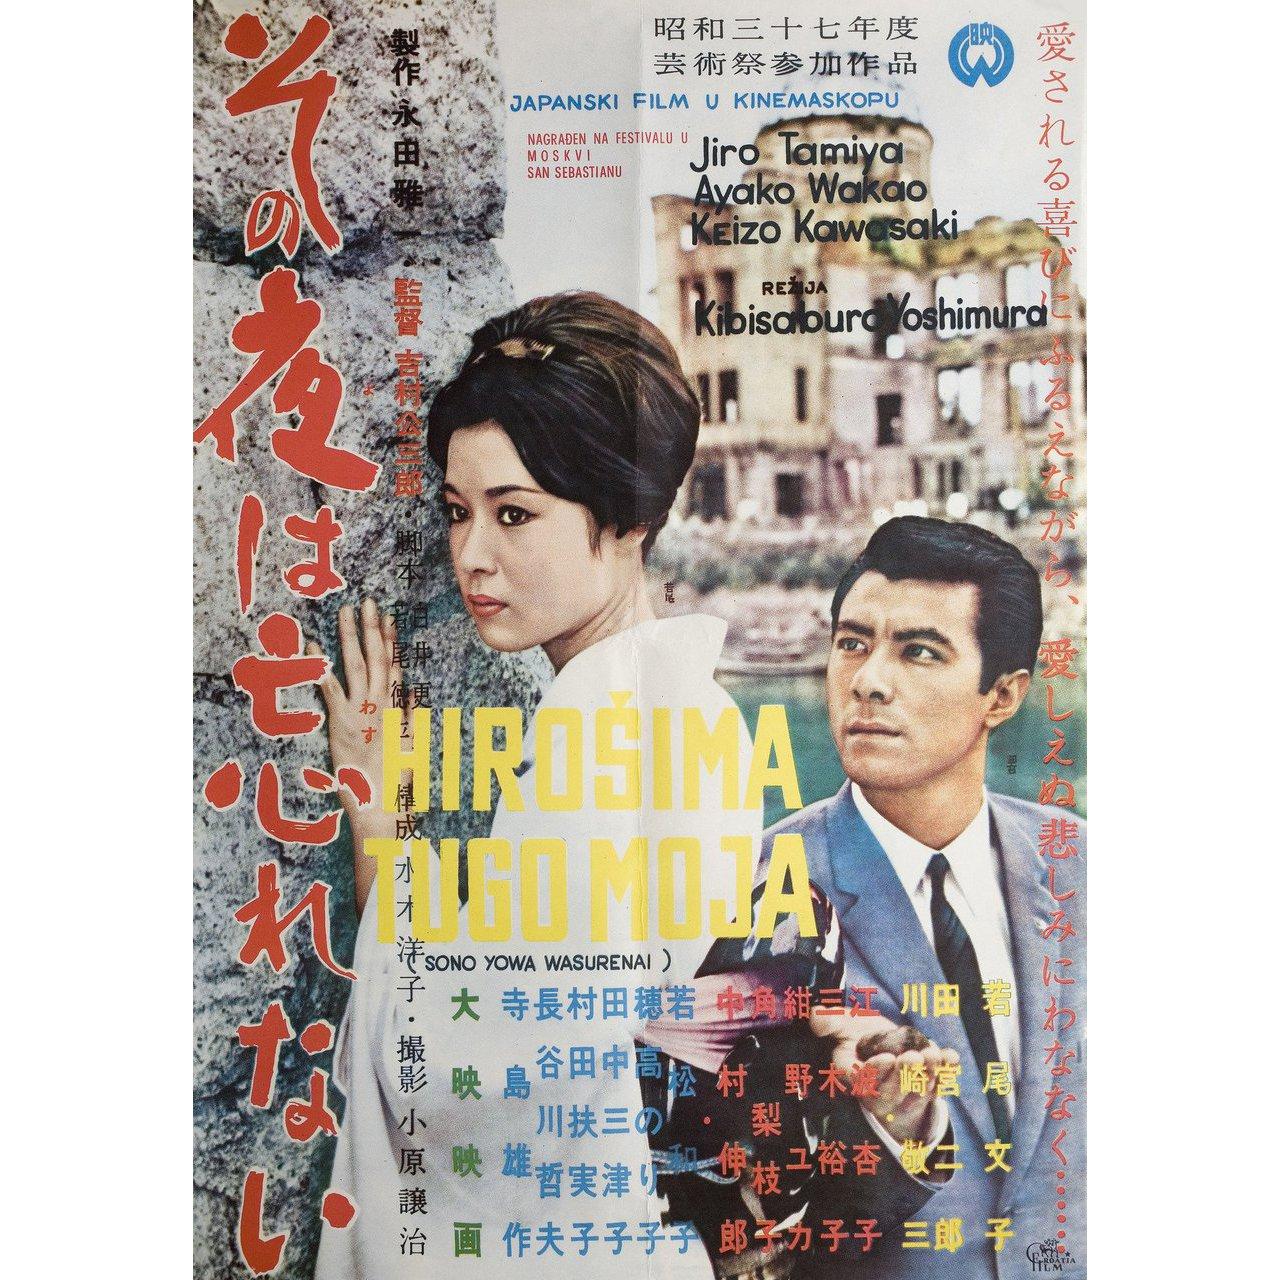 Original 1962 Yugoslav B2 poster for the film “Hiroshima Heartache” (Sonoyoru Wa Wasurenai) directed by Kozaburo Yoshimura with Ayako Wakao / Jiro Tamiya / Keizo Kawasaki / Kyoko Enami. Very good-fine condition, folded. Many original posters were